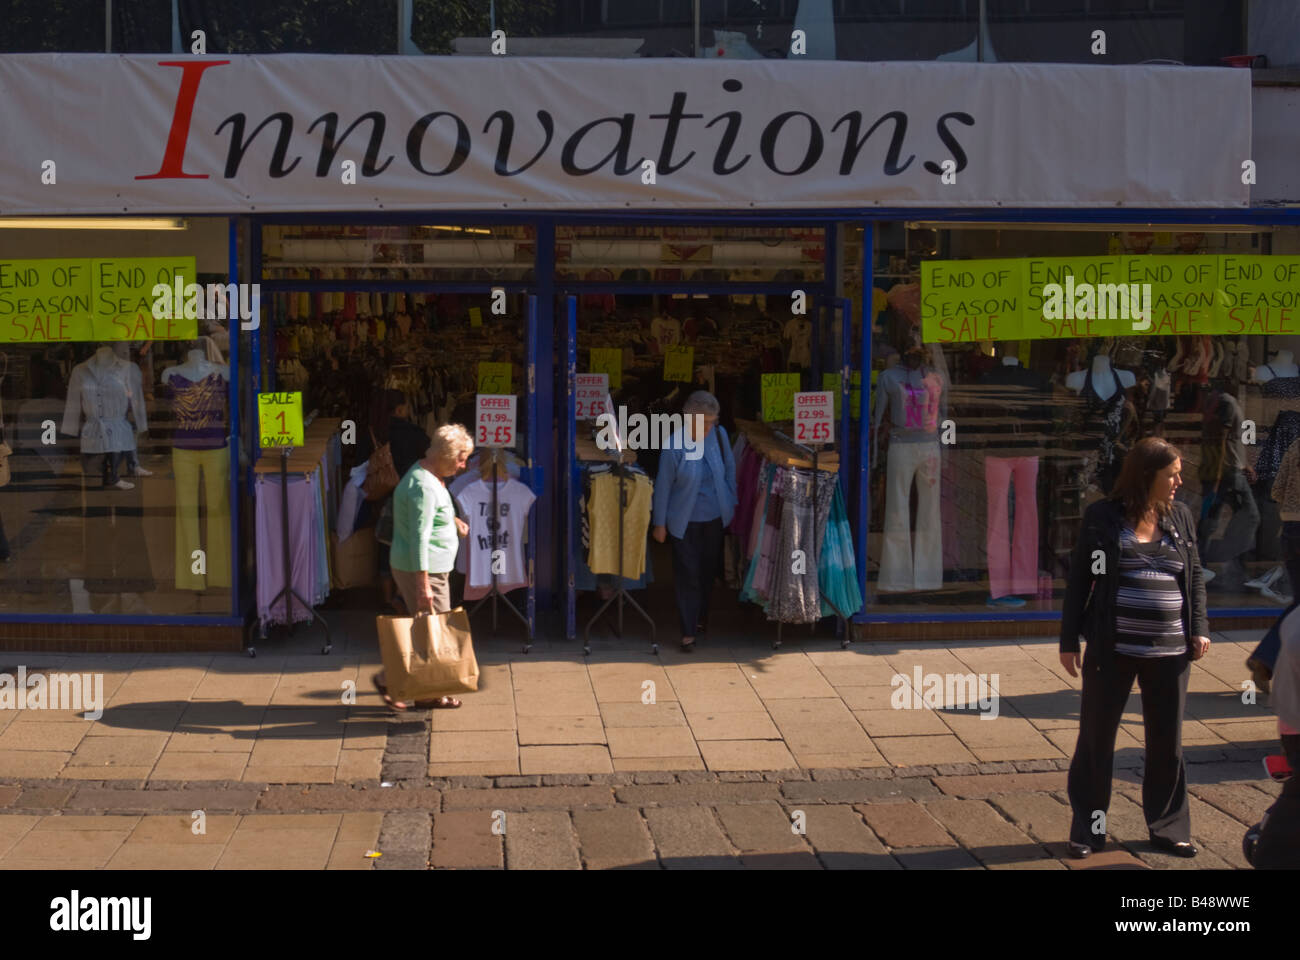 Innovationen in Norwich, Norfolk, Großbritannien (Ende der Saison Verkauf) Stockfoto